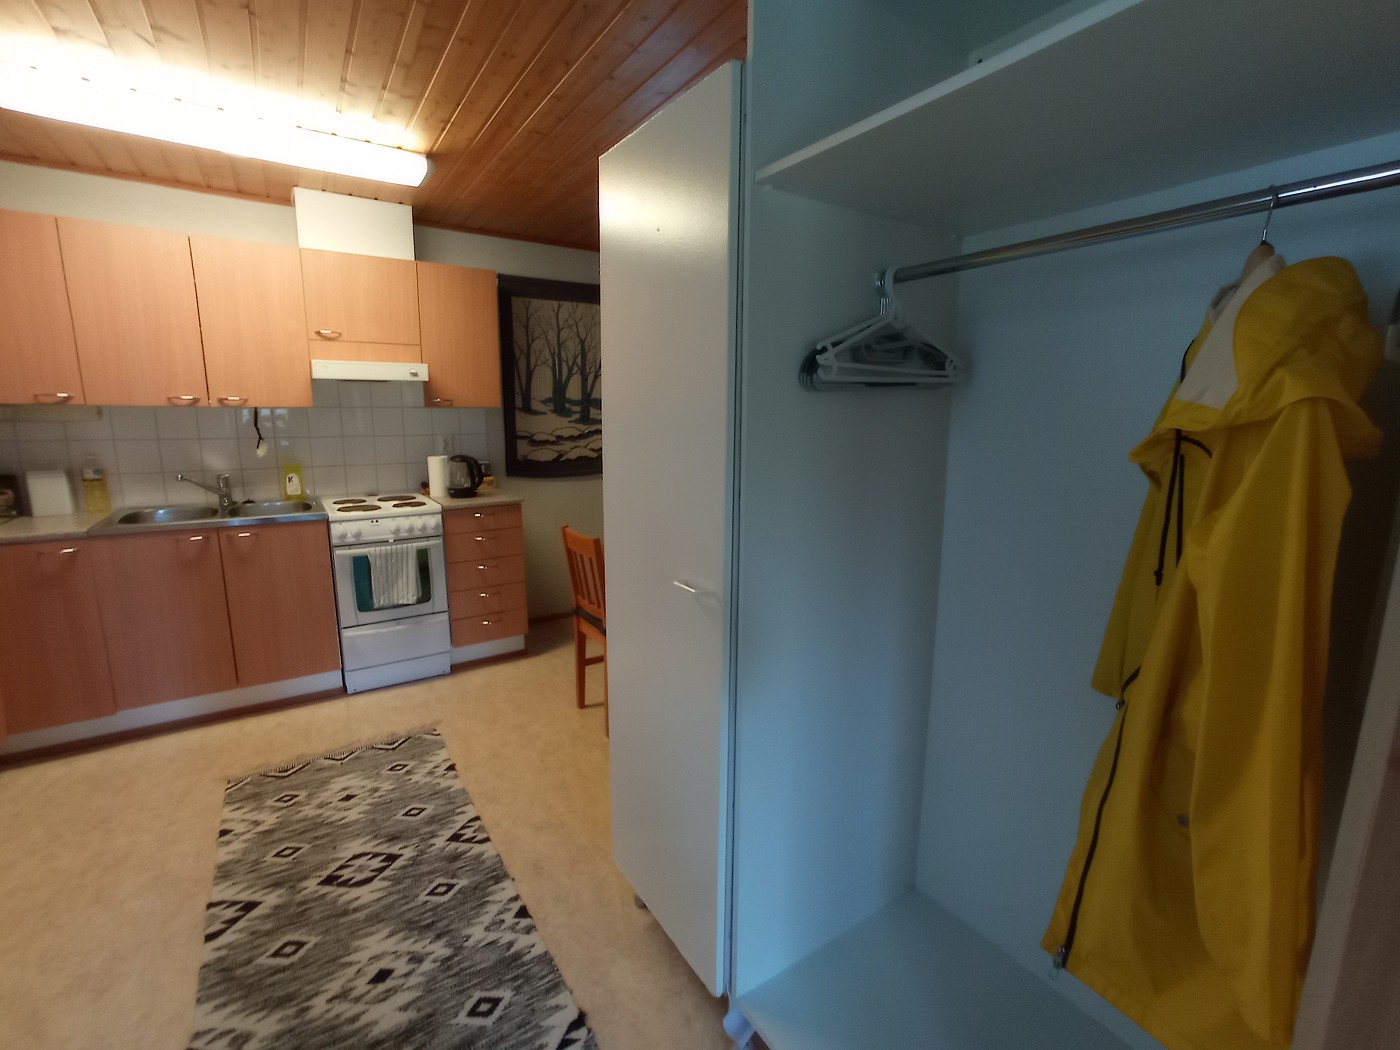 hallway kitchen entry Muonio Airbnb accommodation in Finland